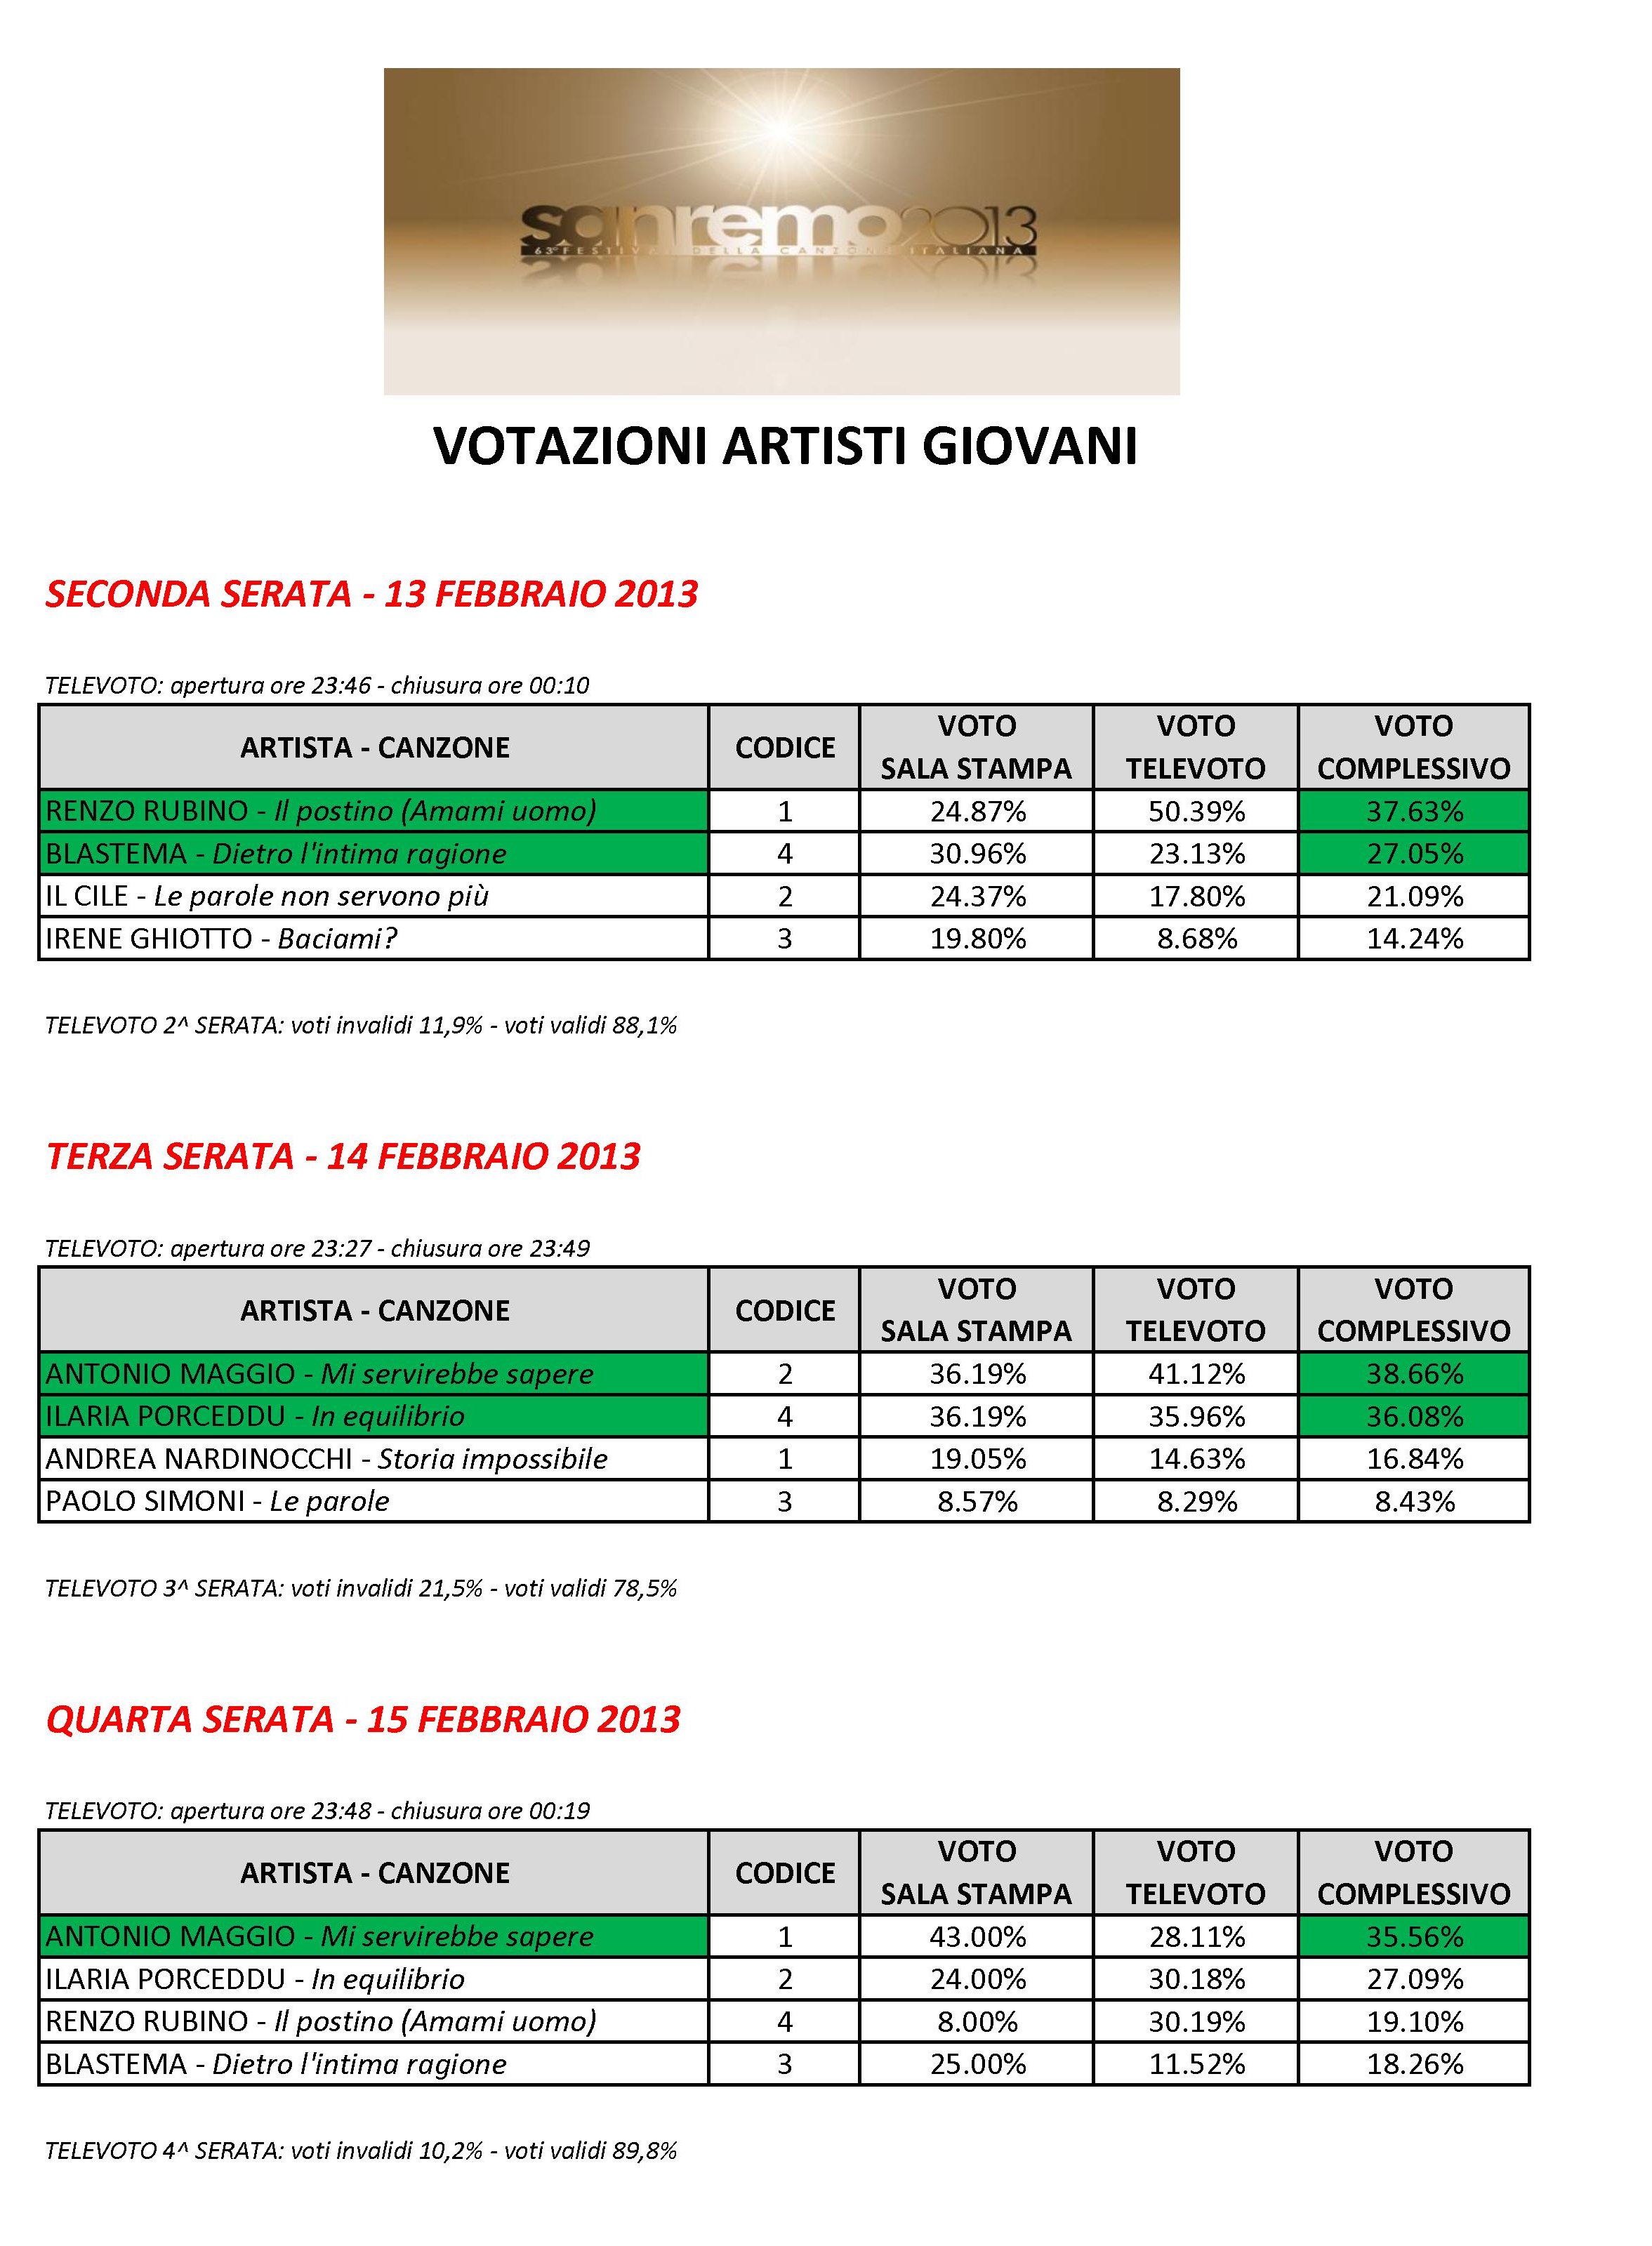 Sanremo 2013: ecco le tabelle con i risultati del televoto nelle cinque serate